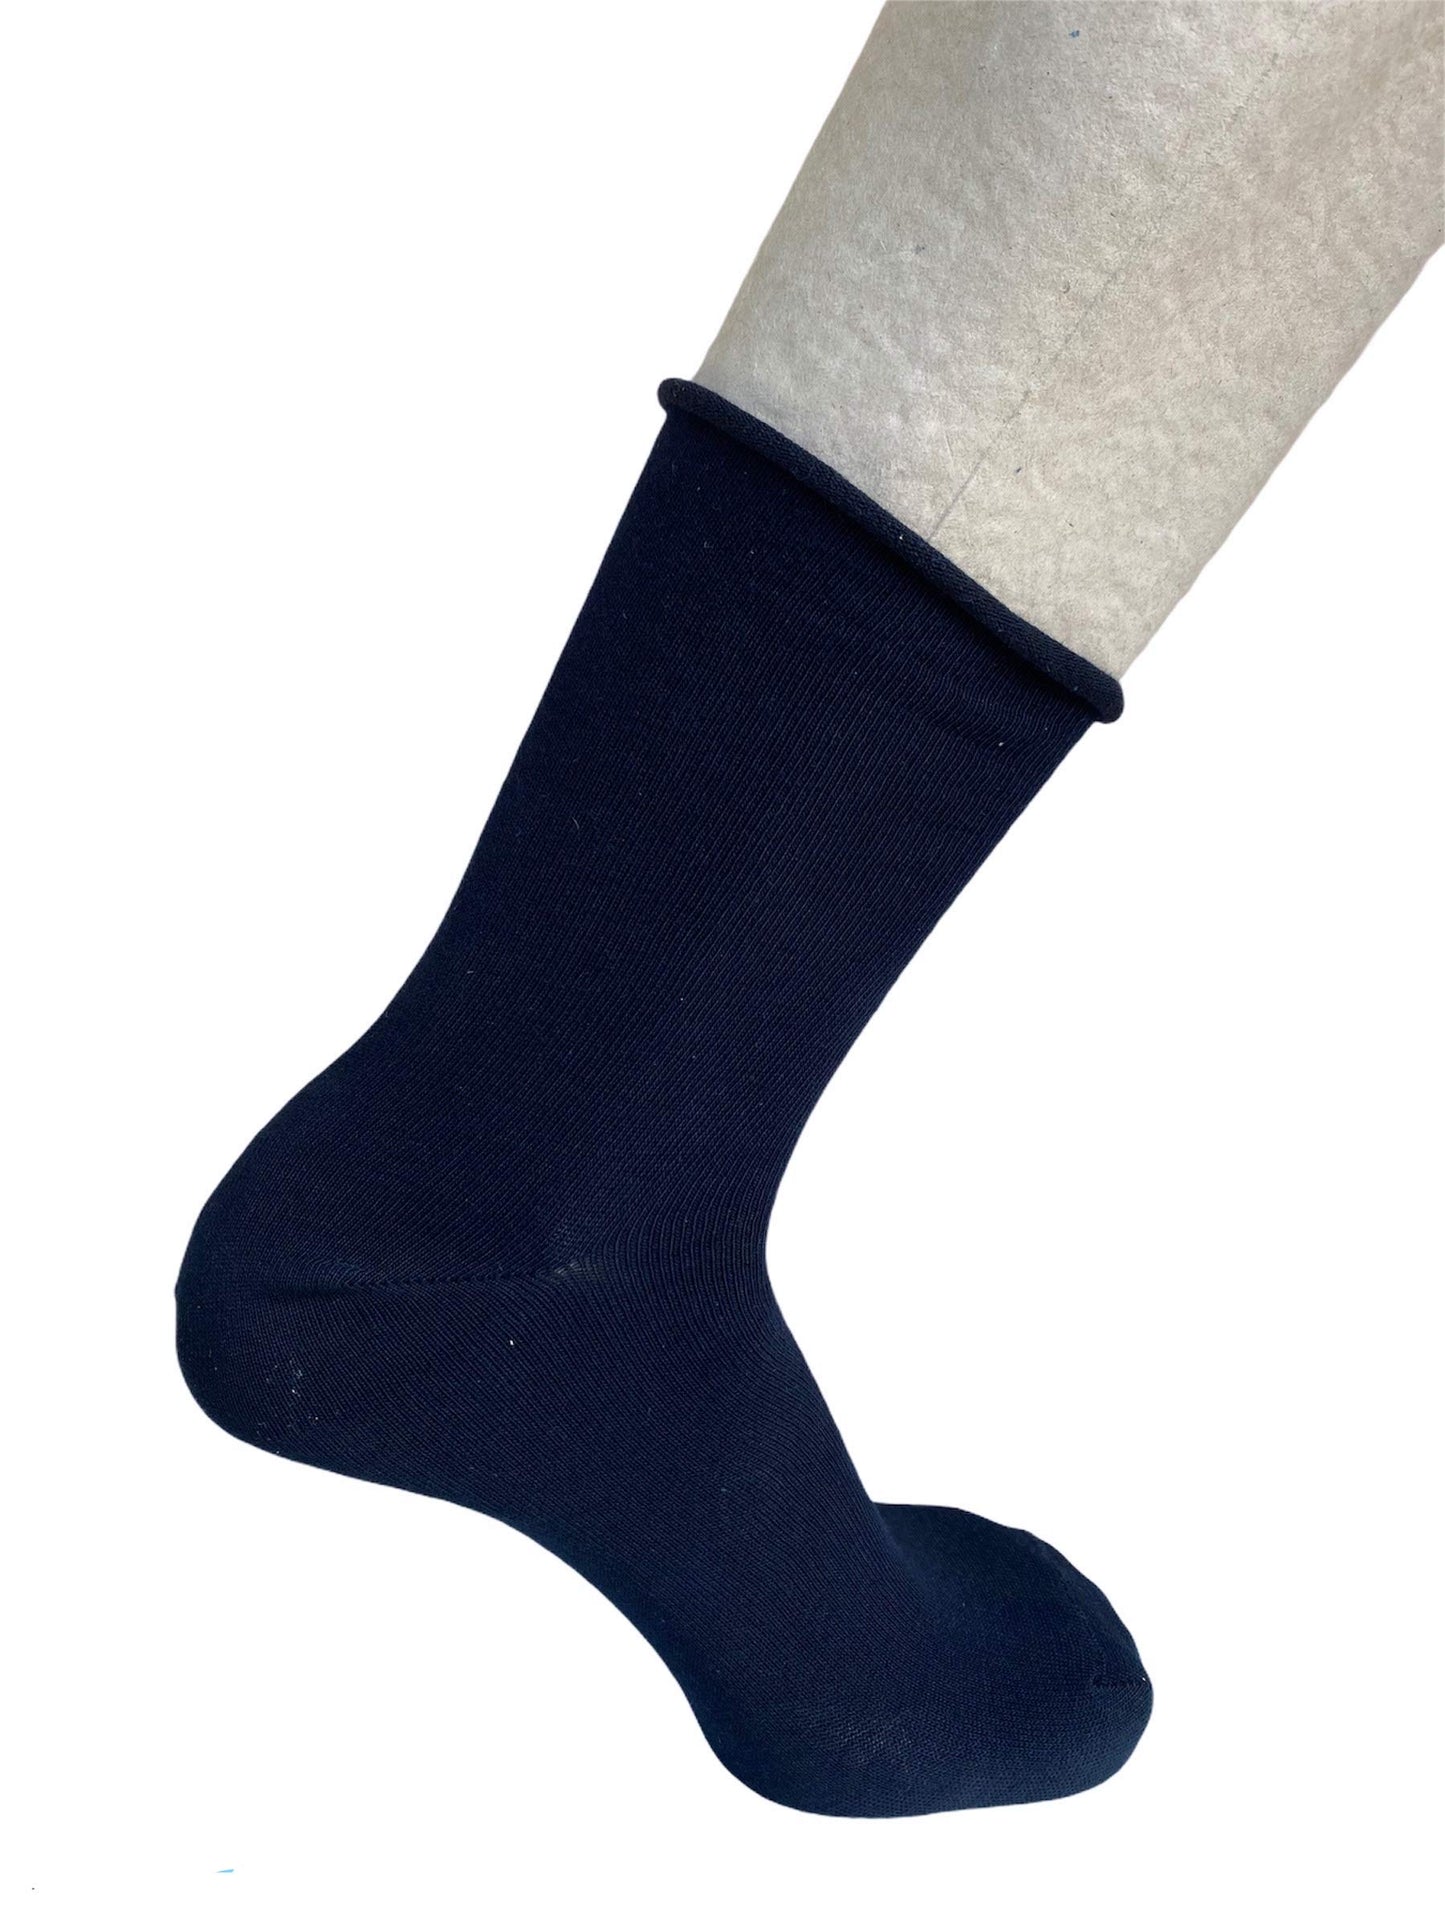 Lucchetti Socks Milano 6 PAIA calze da uomo SANITARIE caldo cotone invernali senza elastico taglio laser rimagliate Made in Italy